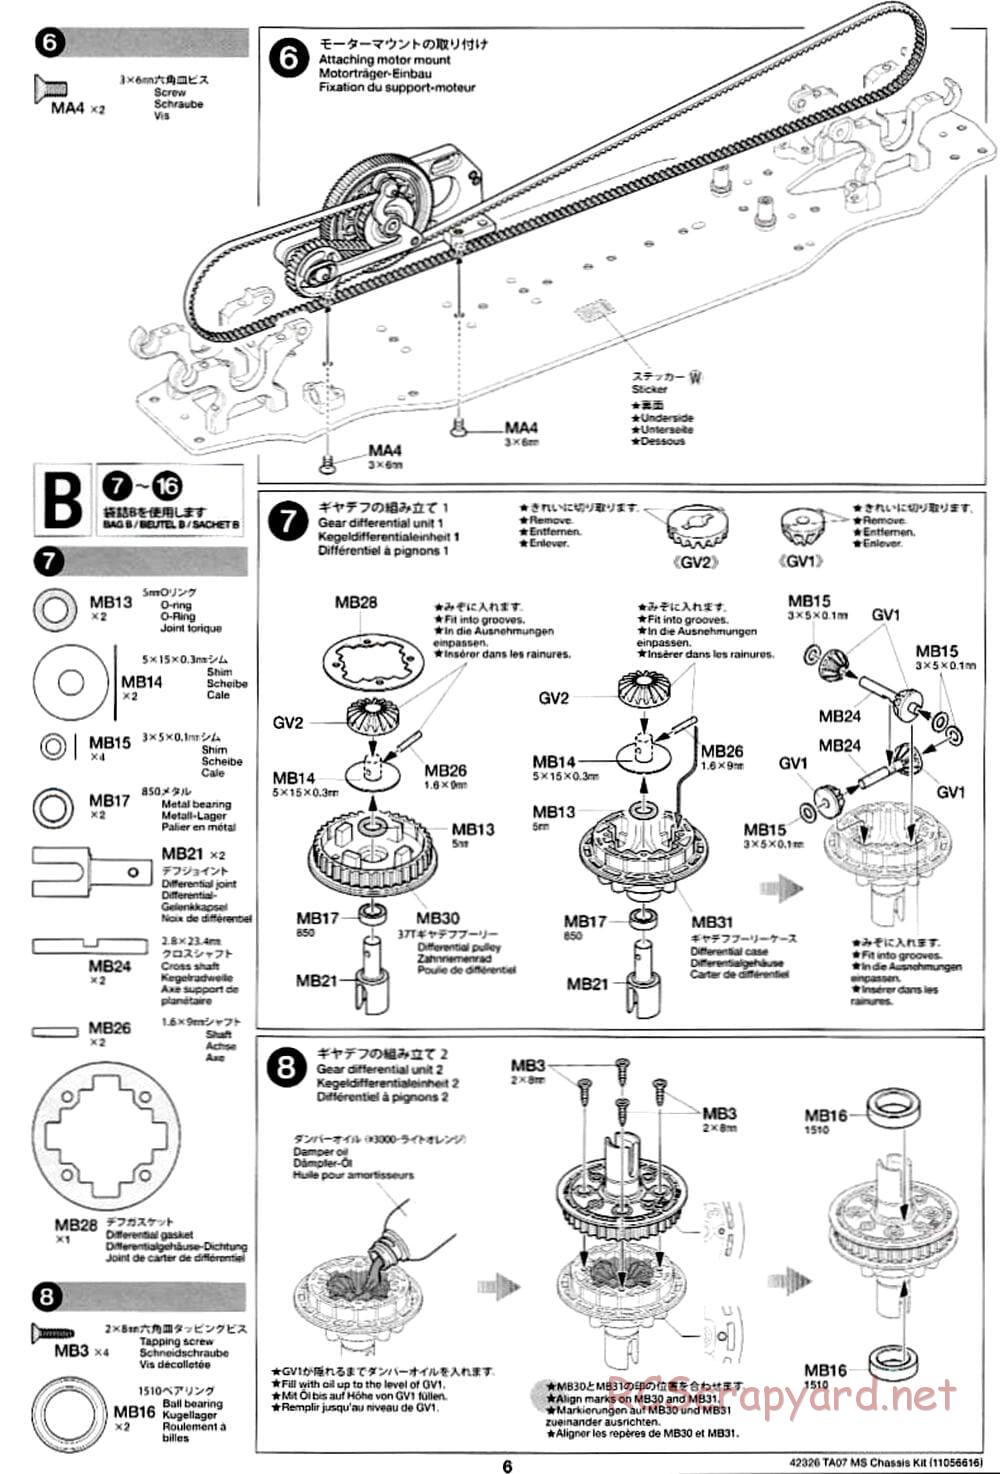 Tamiya - TA07 MS Chassis - Manual - Page 6